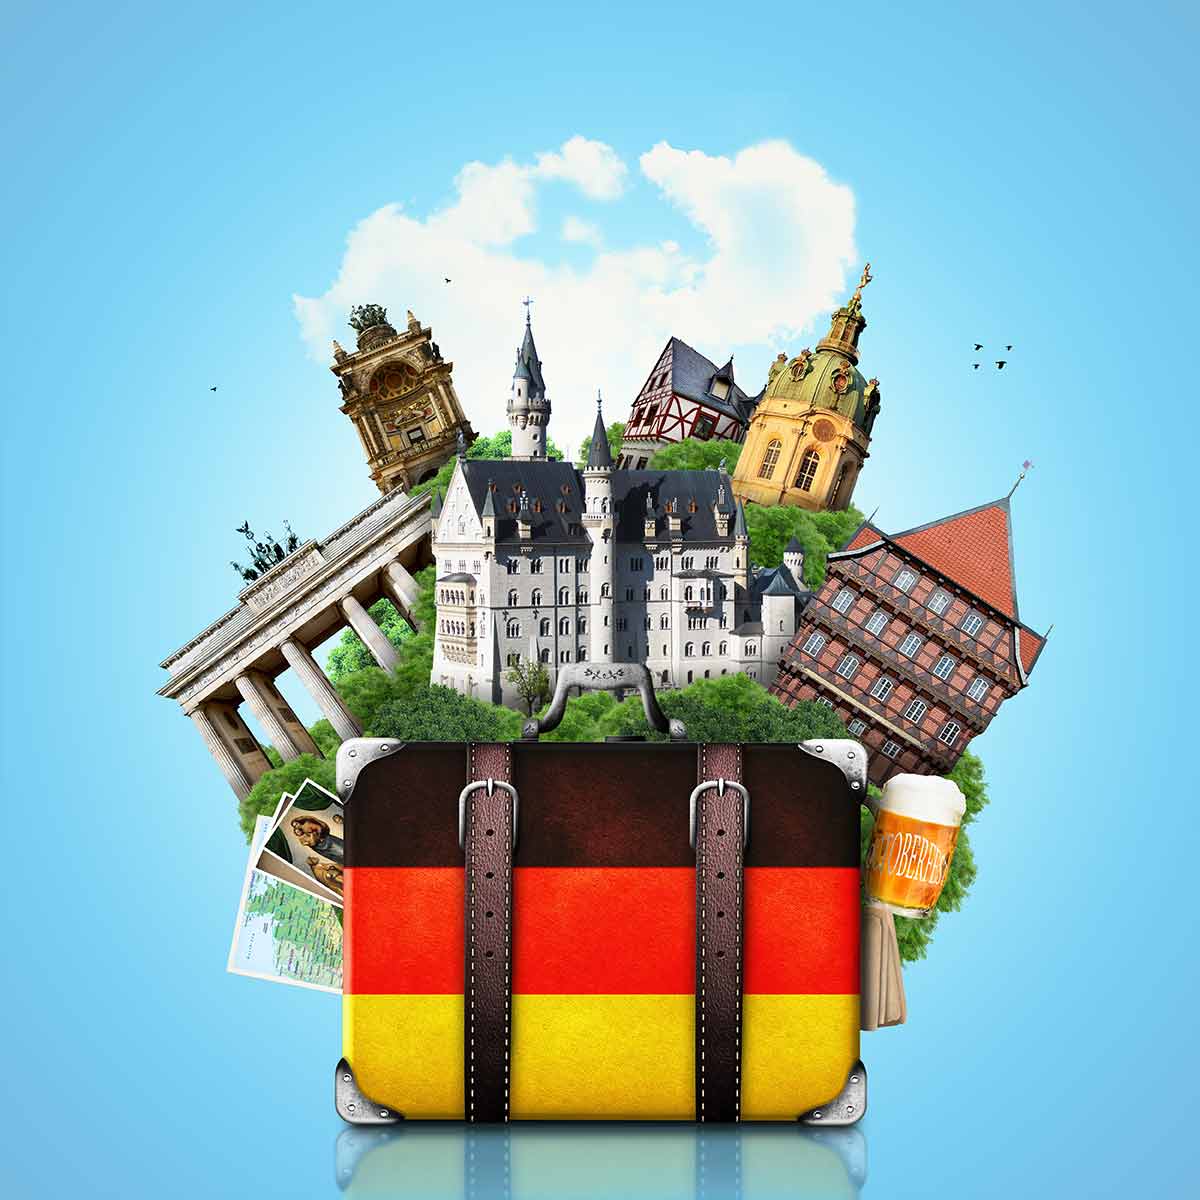 8 Tempat Terbaik di Jerman Untuk di Kunjungi (Part 1)